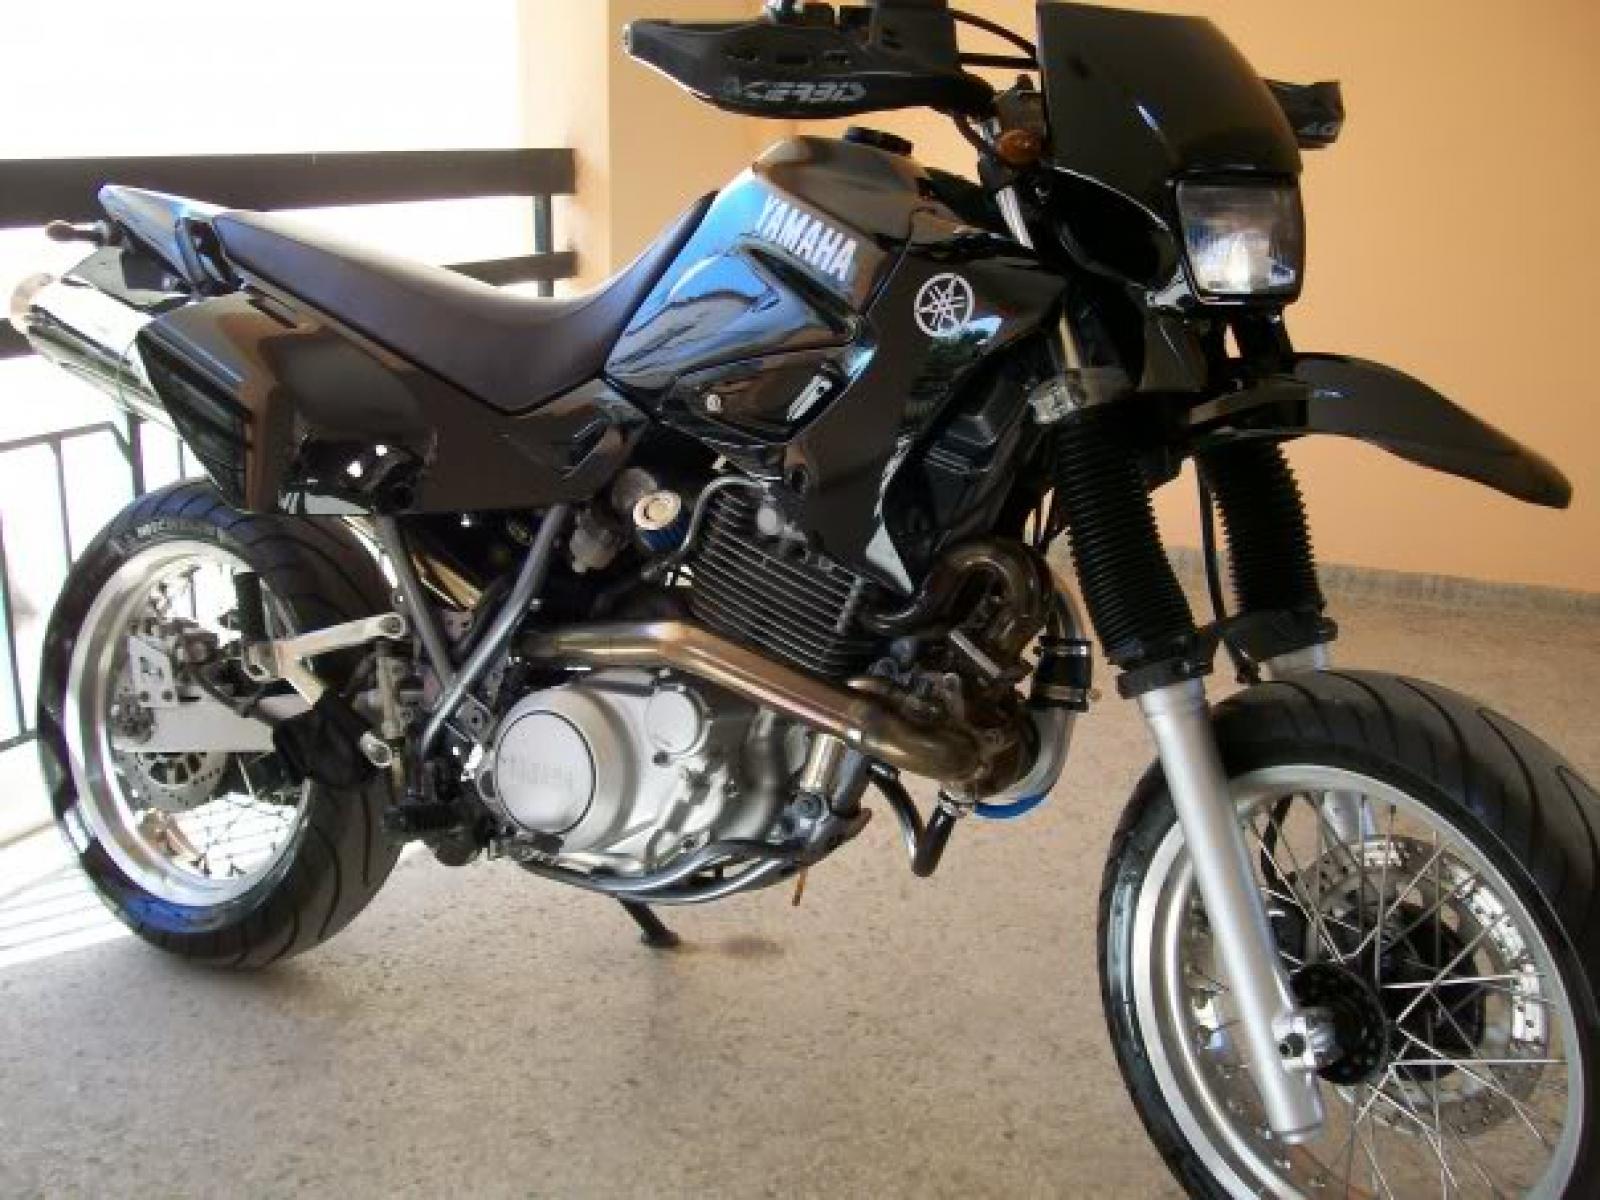 Moto Yamaha XT 600 E - 2001 - R$ 15500.0